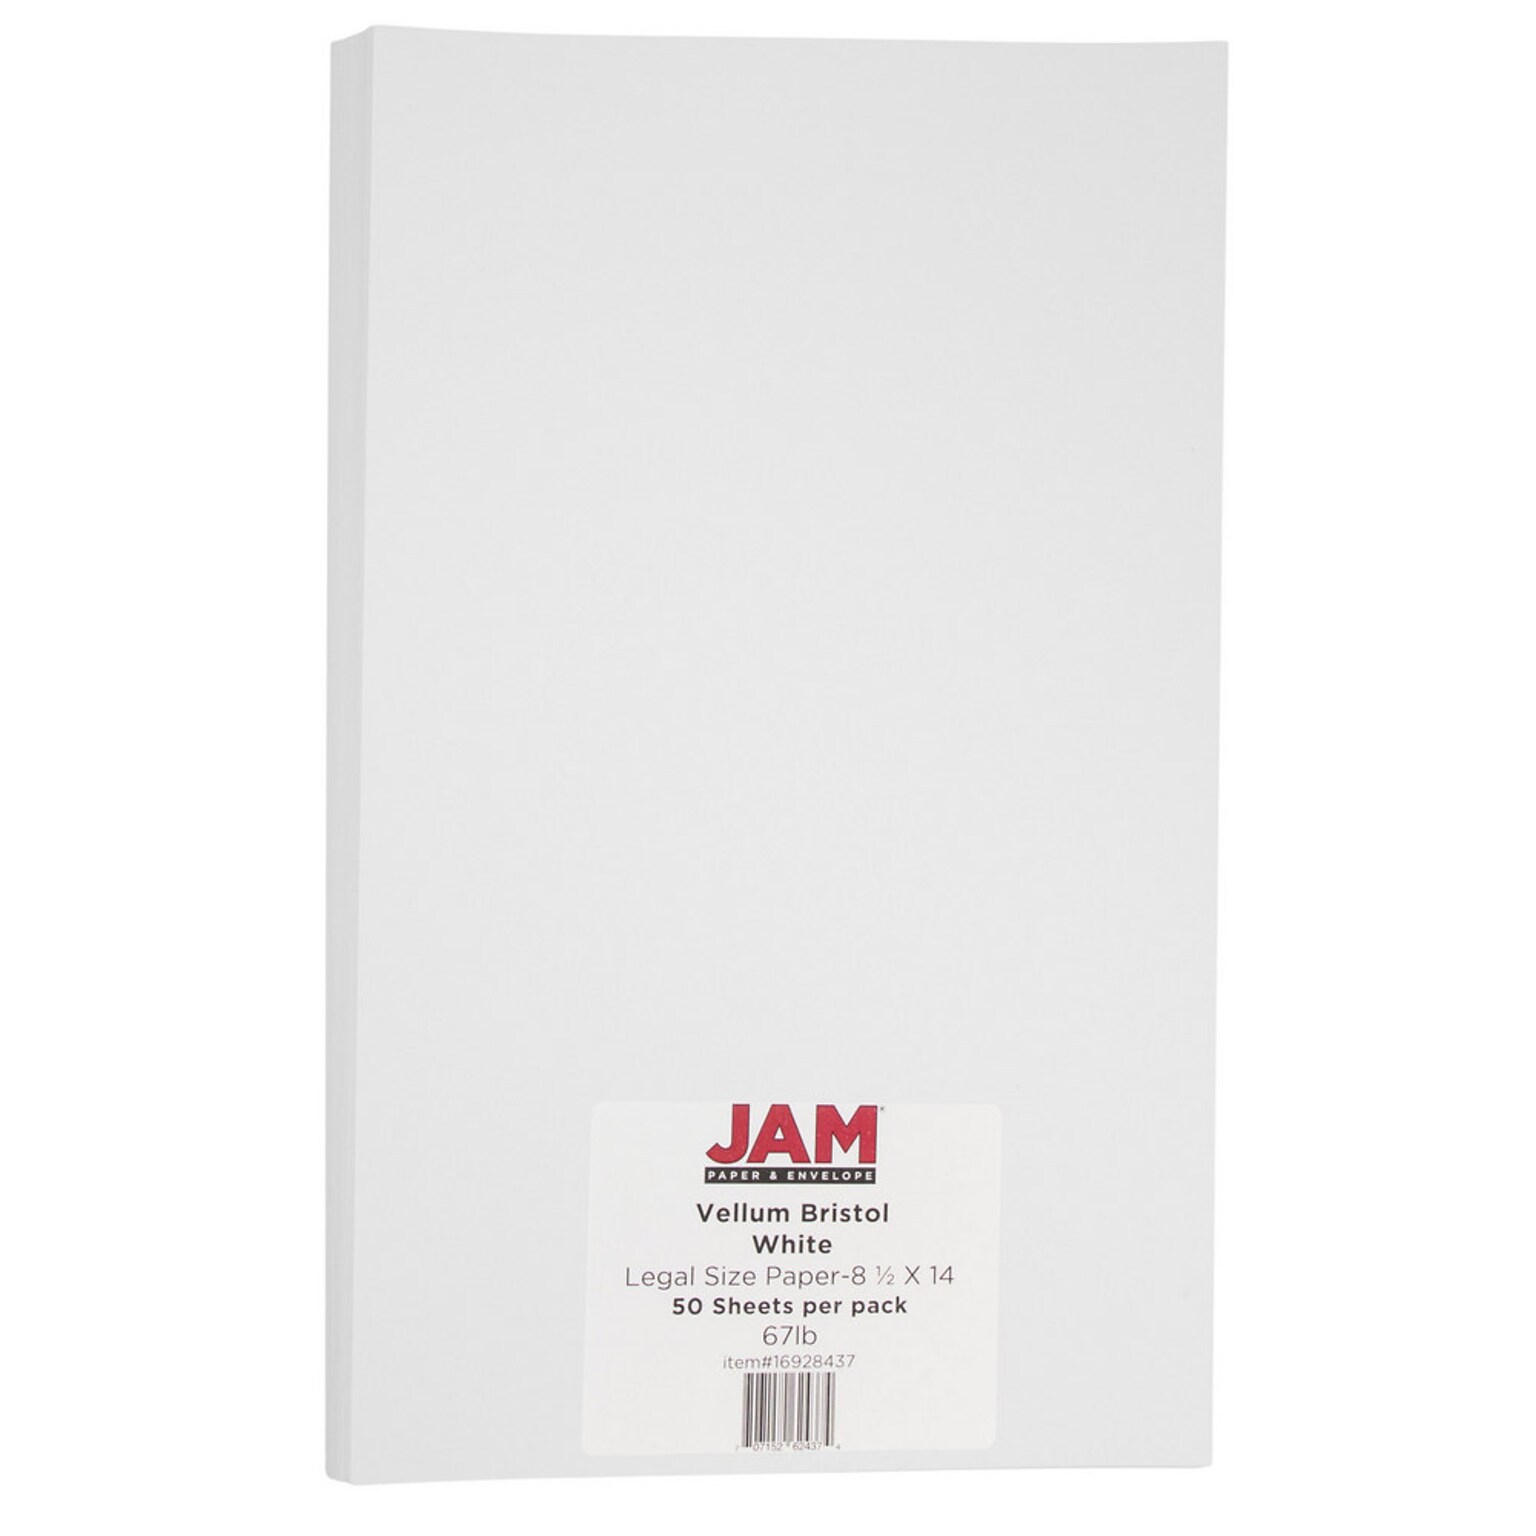 JAM Paper Vellum Bristol 67 lb. Cardstock Paper, 8.5 x 14, White Vellum Bristol, 50 Sheets/Pack (16928437)